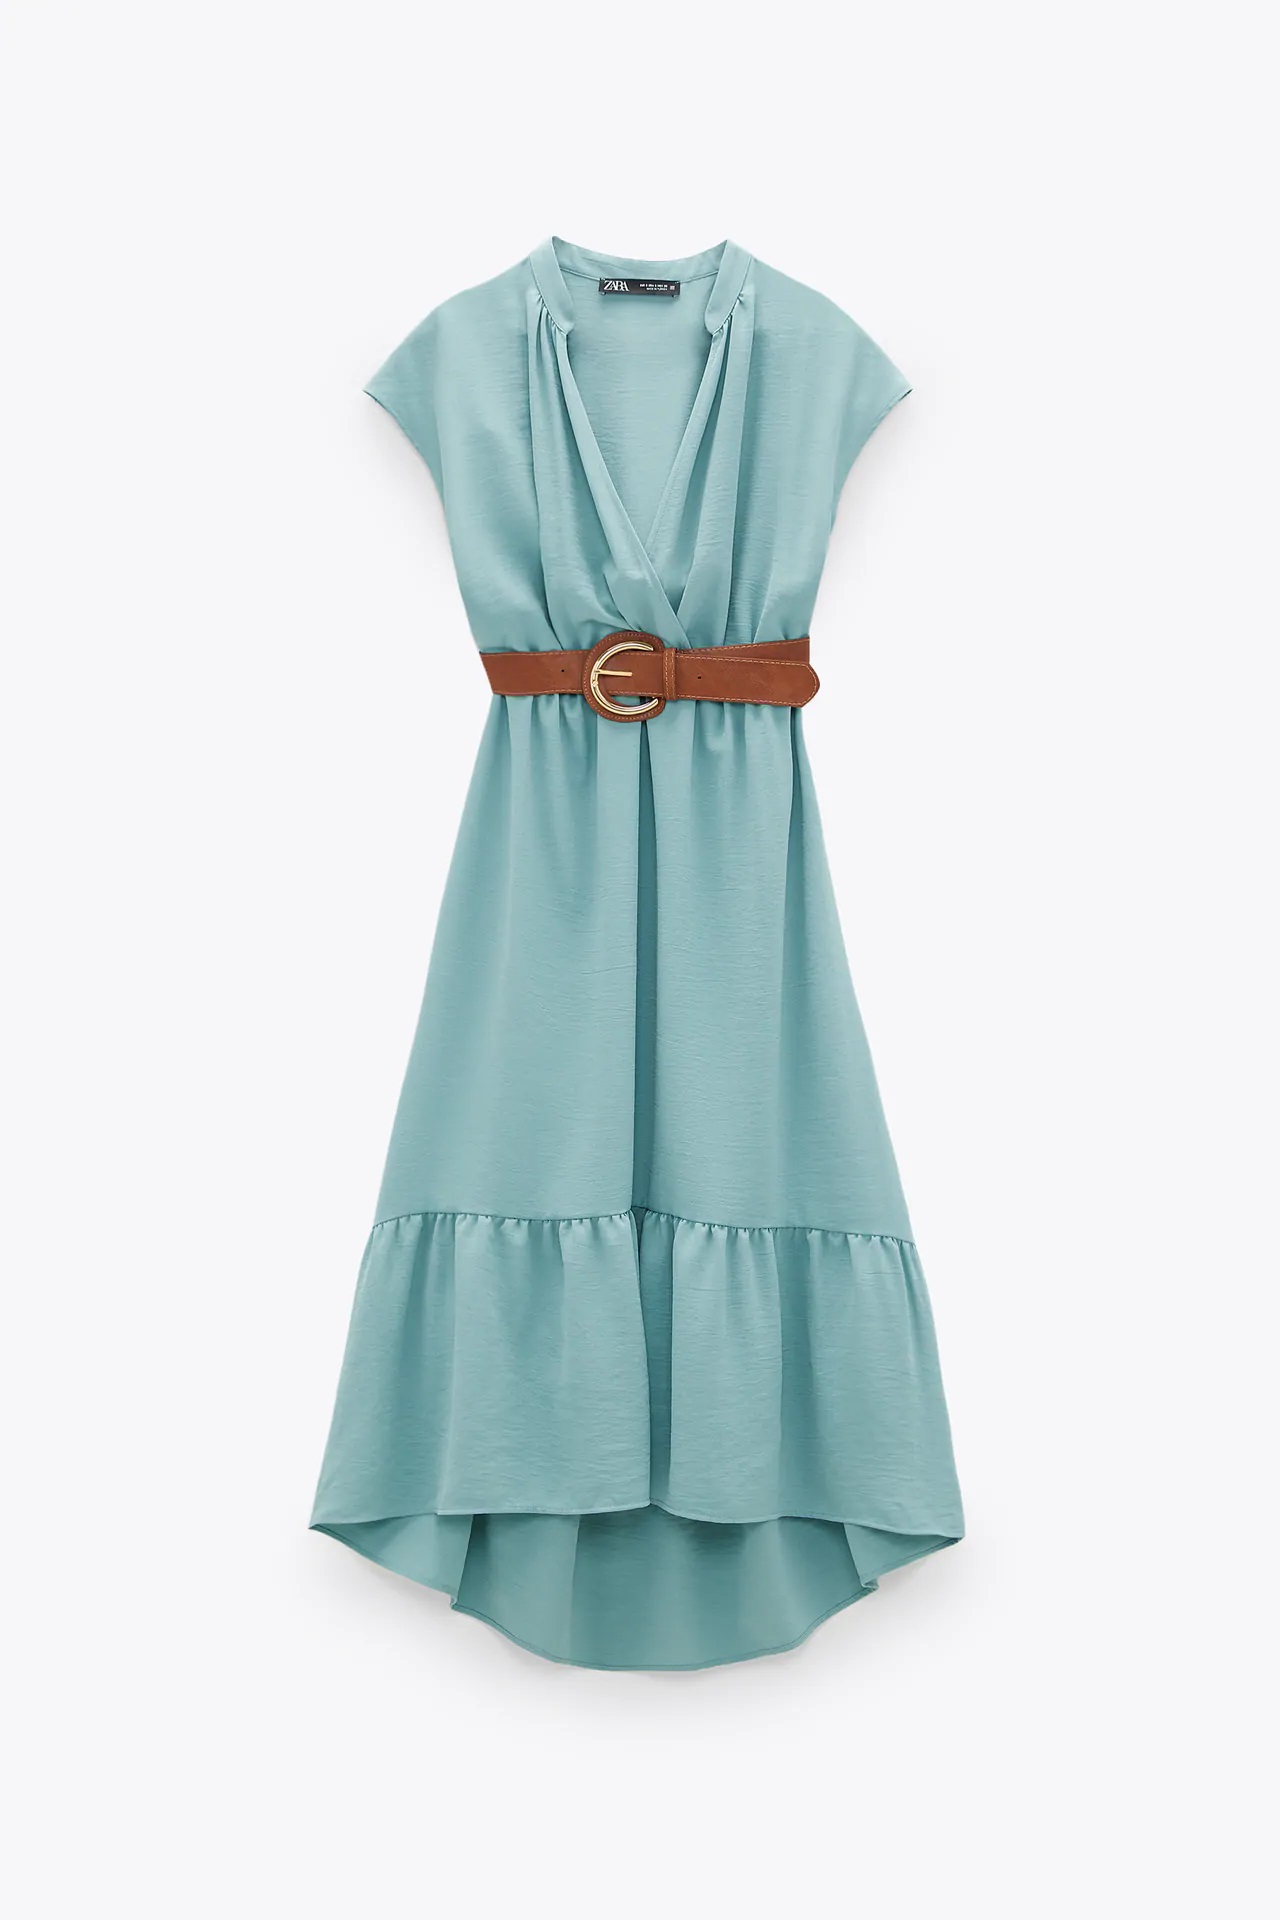 Ana de Armas: Los vestidos low cost de Zara que tendría en su armario